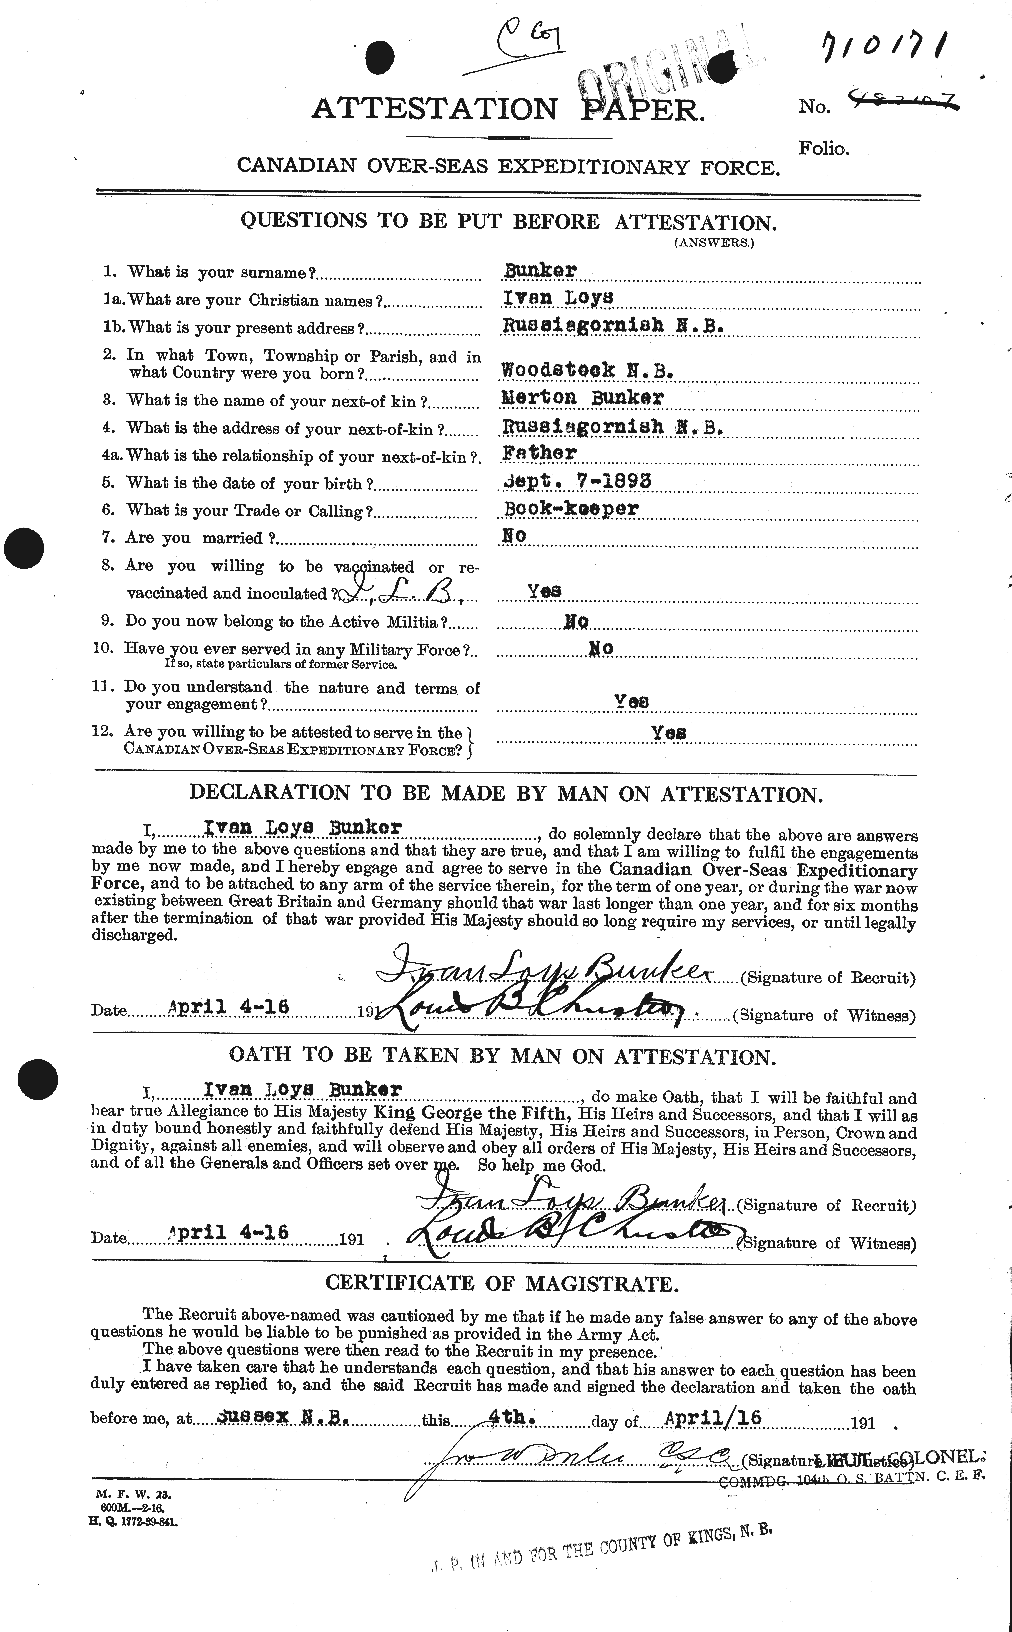 Dossiers du Personnel de la Première Guerre mondiale - CEC 270401a